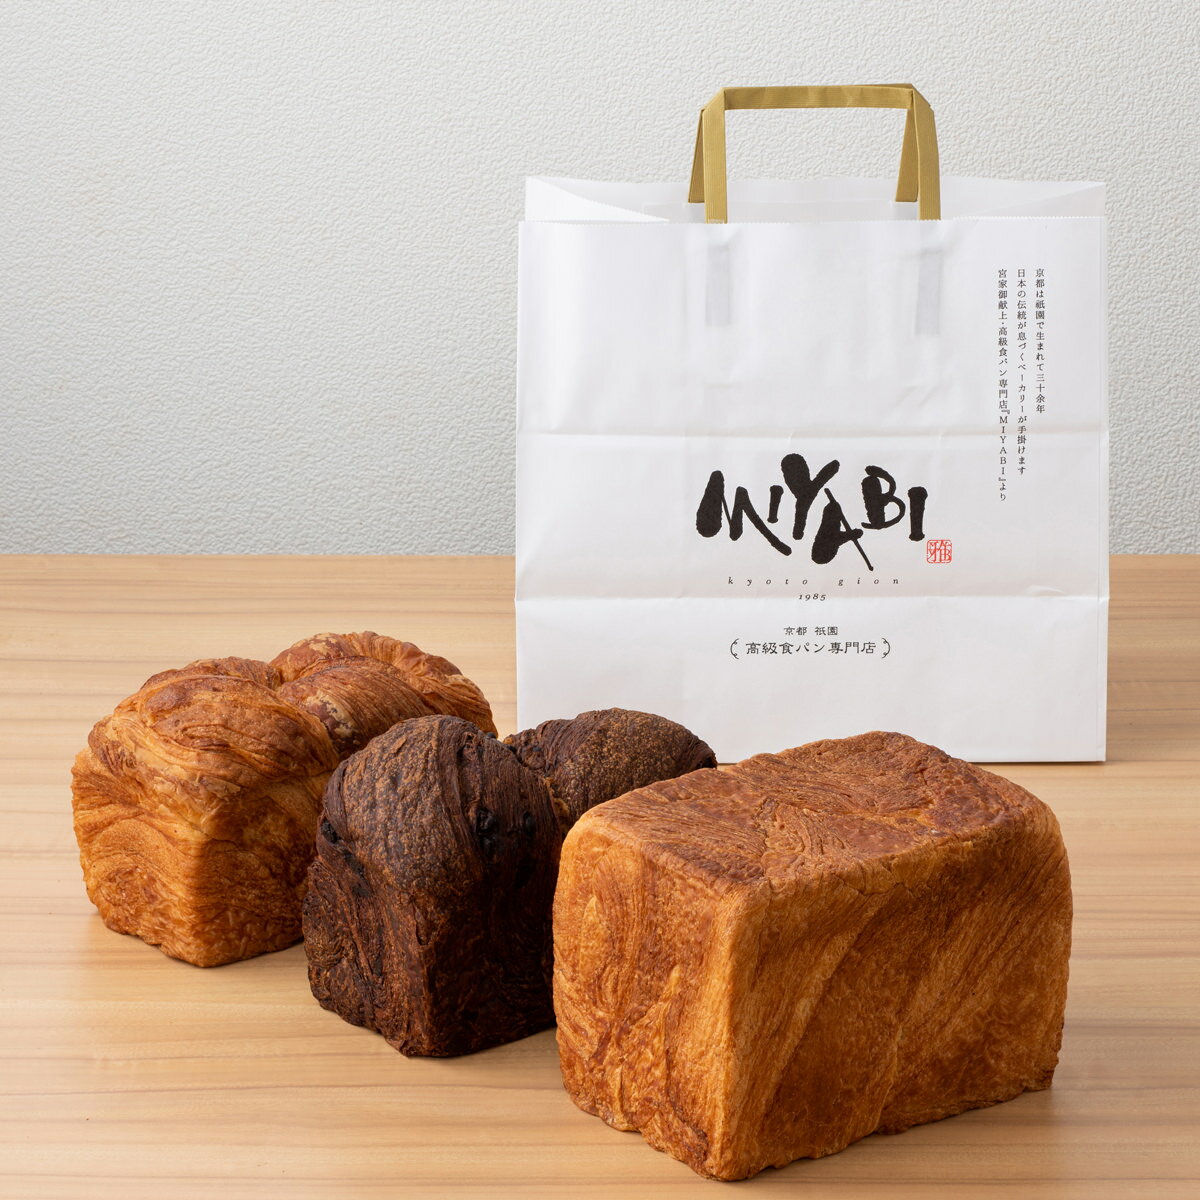 ミヤビ 食パン ミヤビパン 人気3本セット メープル 食パン MIYABI パン プレーン デニッシュ食パン ショコラ MIYABIパン 高級 パン お取り寄せ